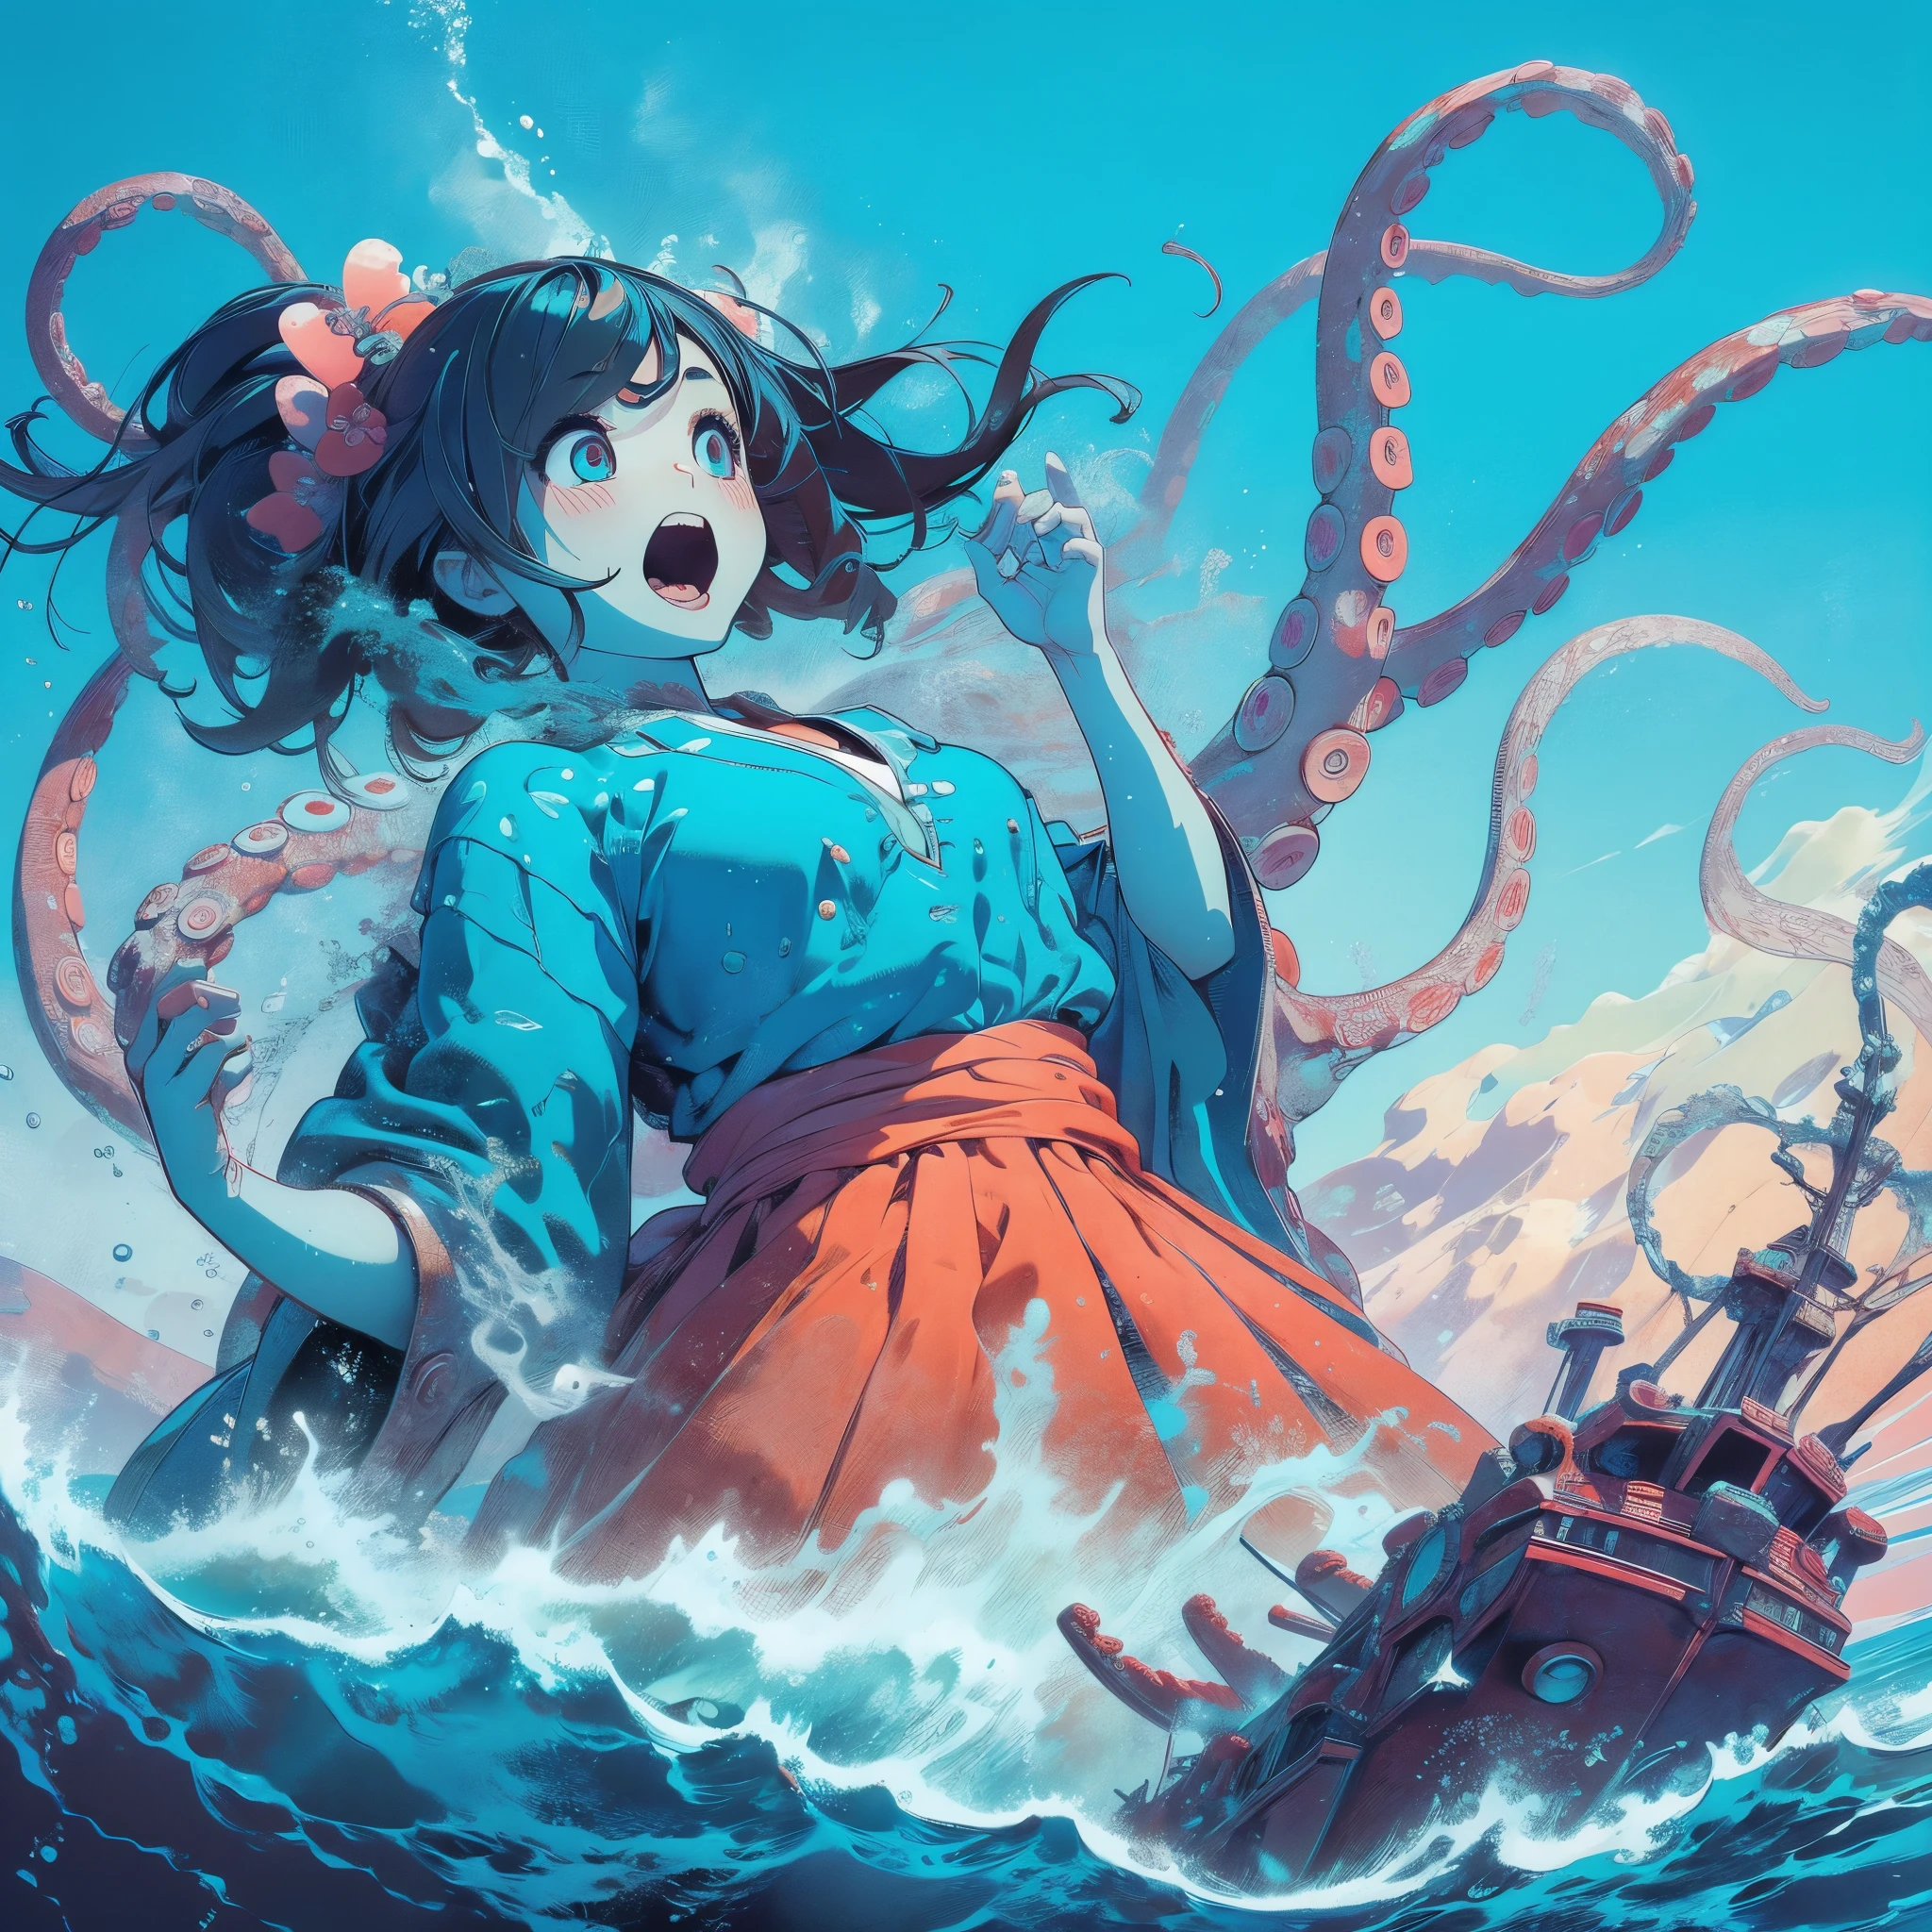 Океан. гигантская девочка. Атаки из-под поверхности. Девушка атакует корабль. щупальца на дне океана. плавать. Стиль.